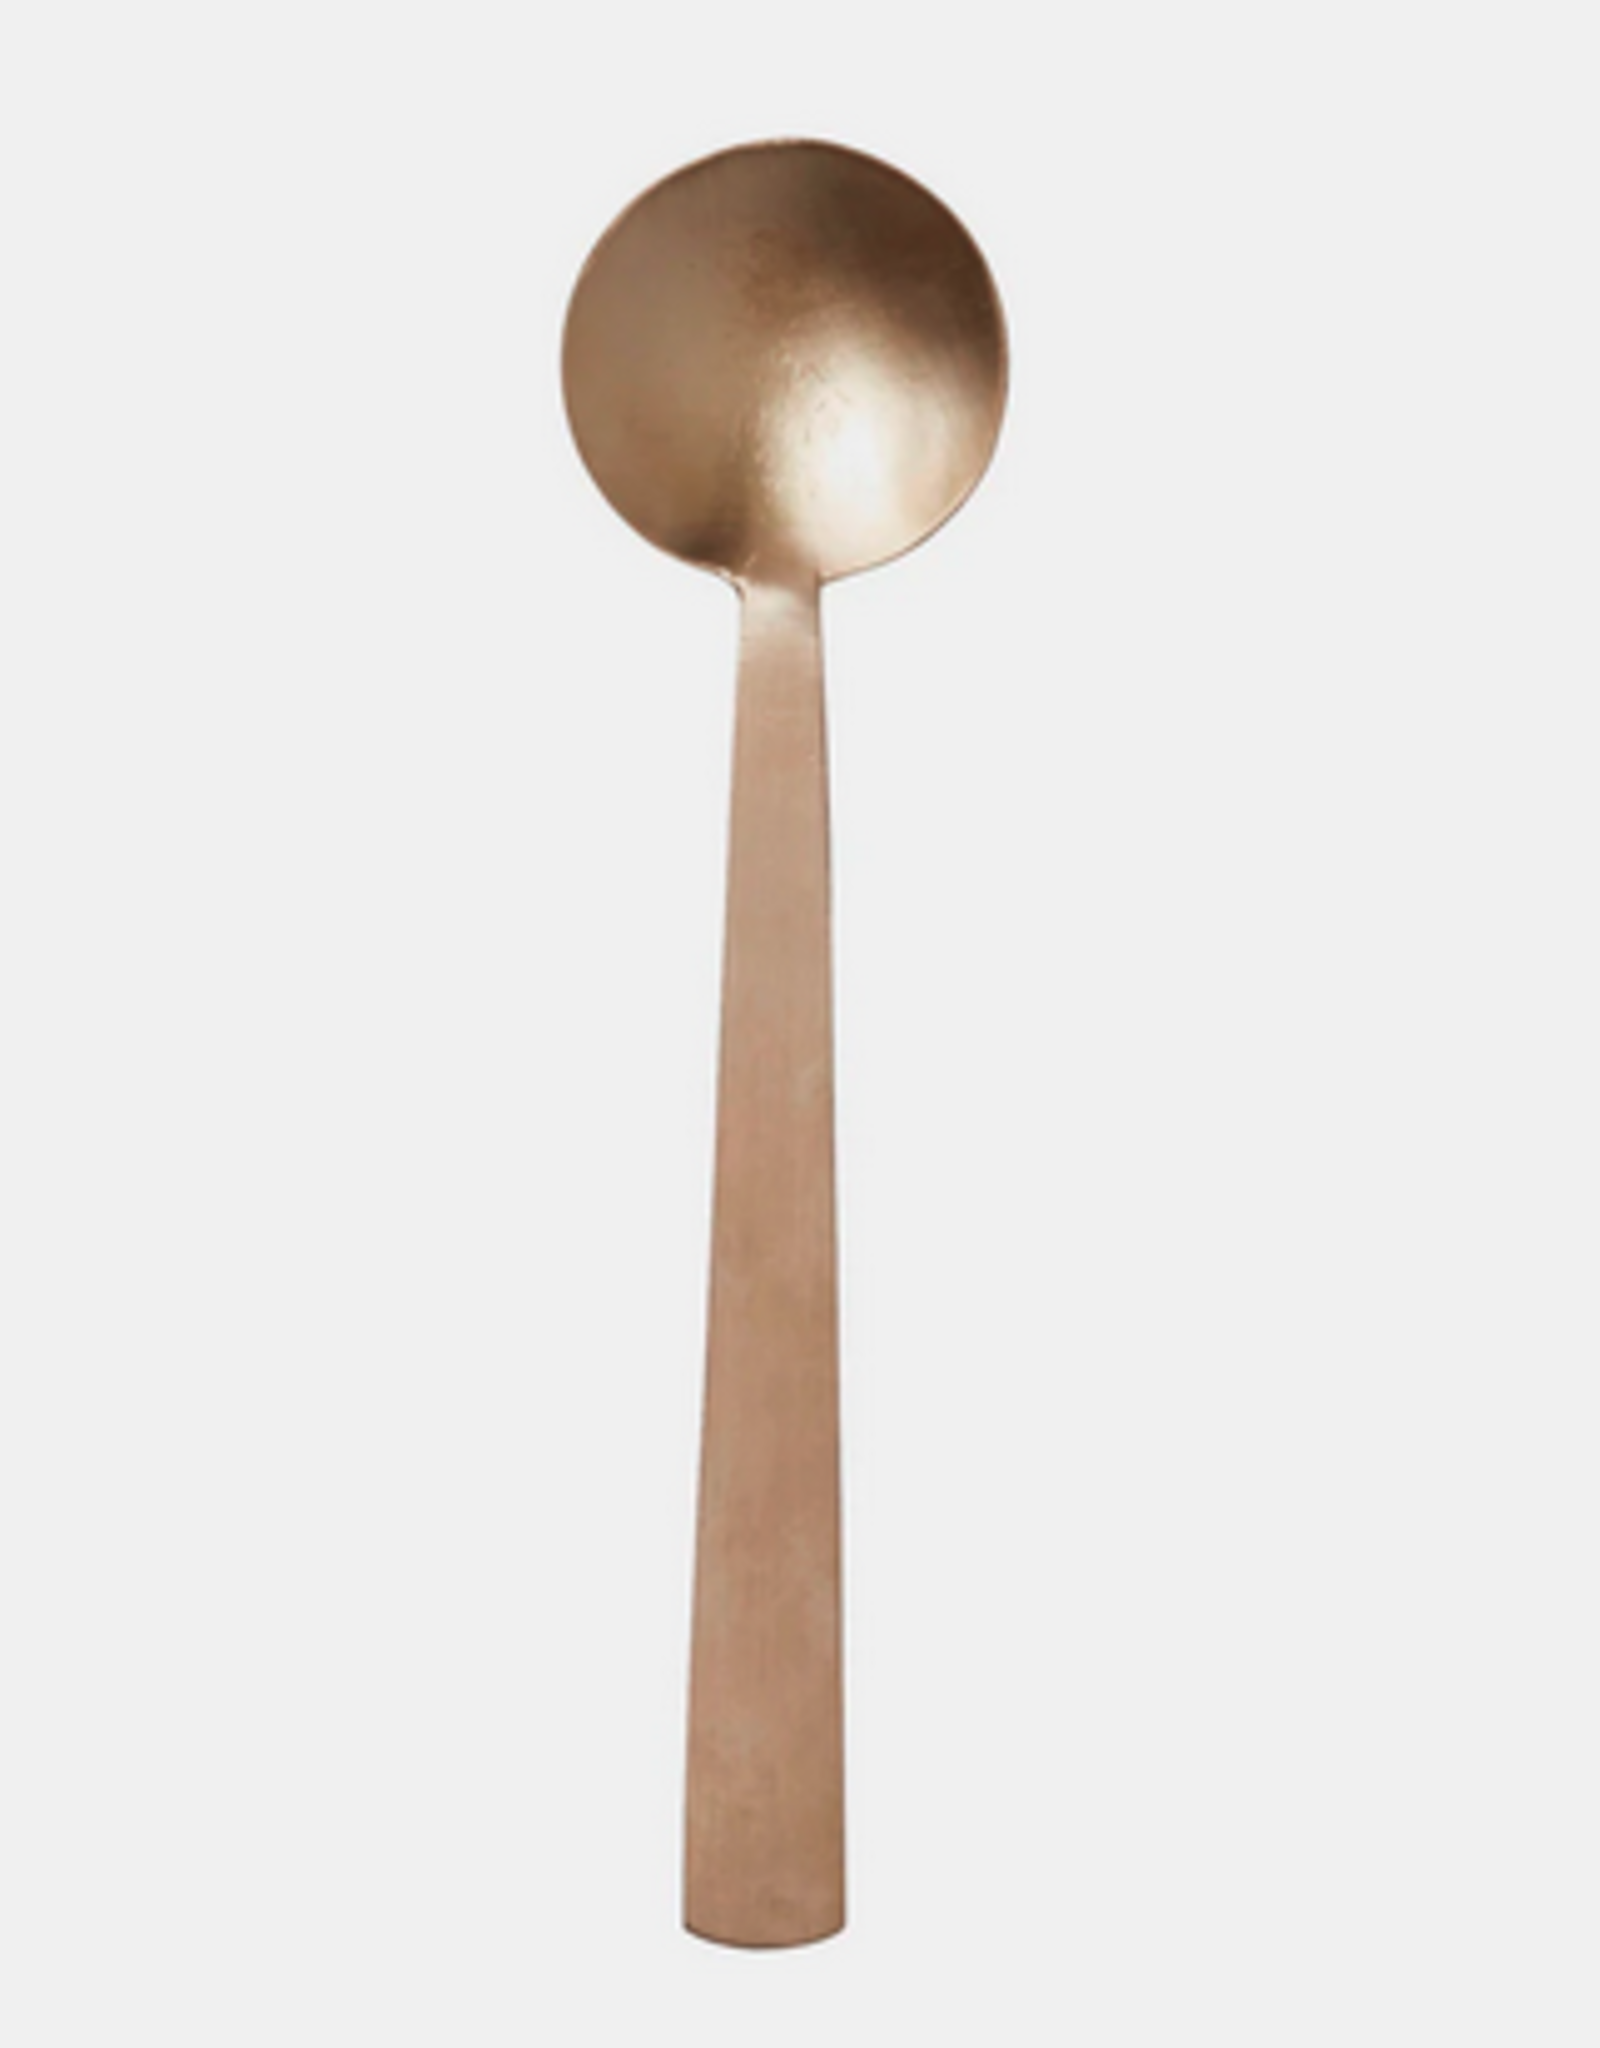 Small Brass Flat Spoon L7"